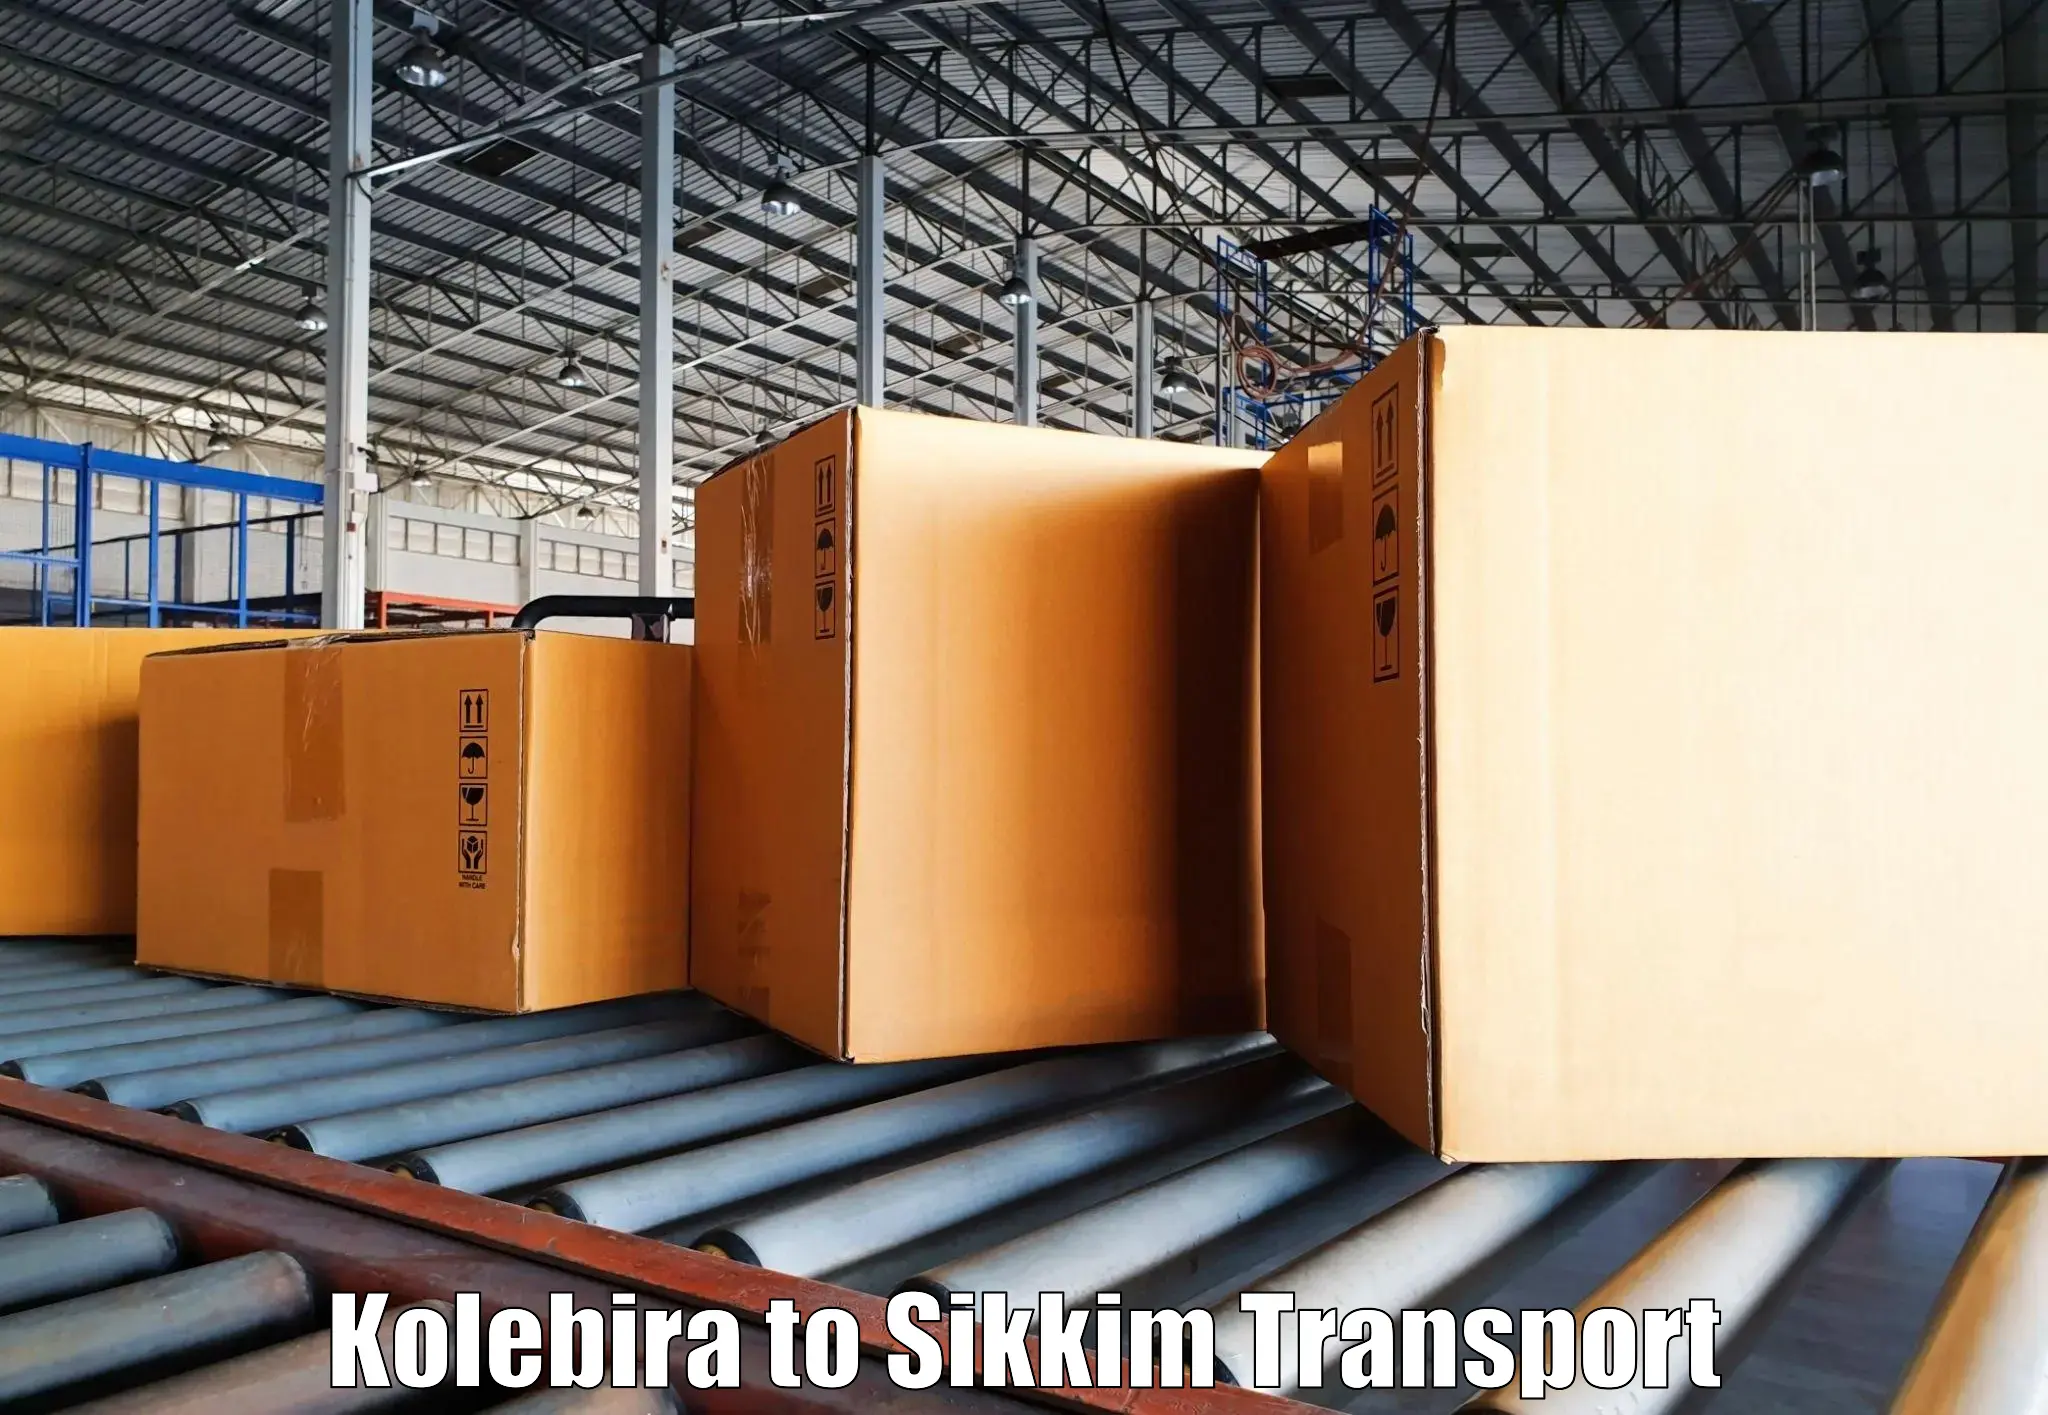 Online transport booking Kolebira to Pelling